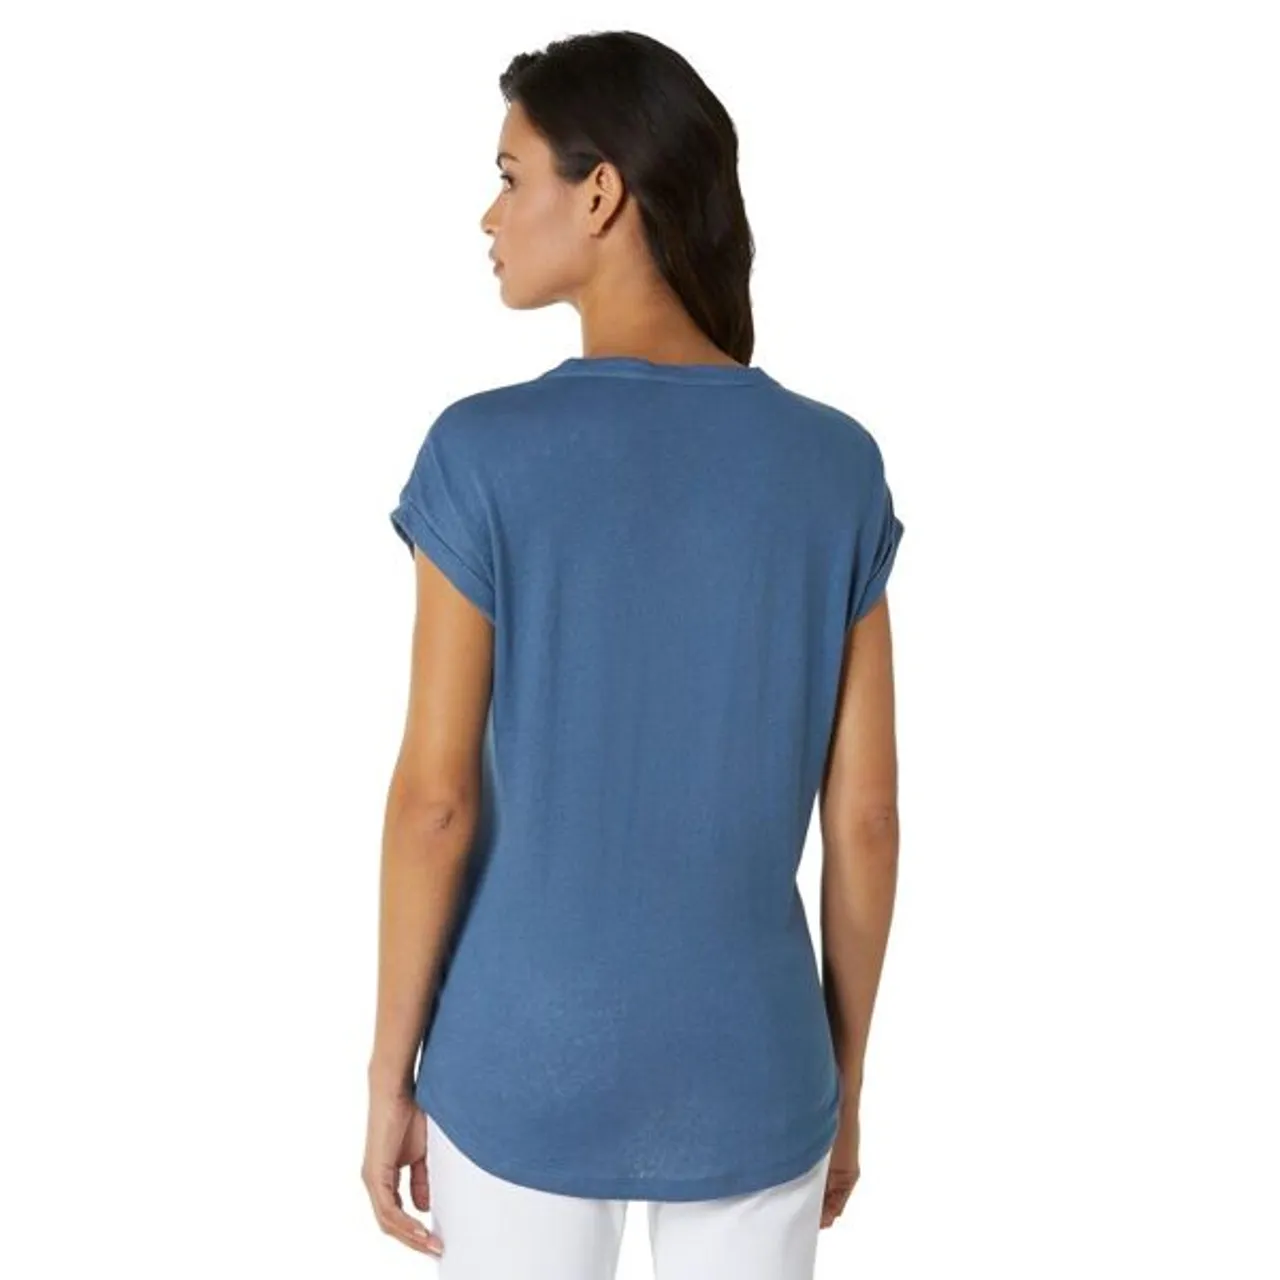 V-Shirt CREATION L PREMIUM "Leinen-Viskose-Shirt" Gr. 38, blau (jeansblau) Damen Shirts V-Shirts